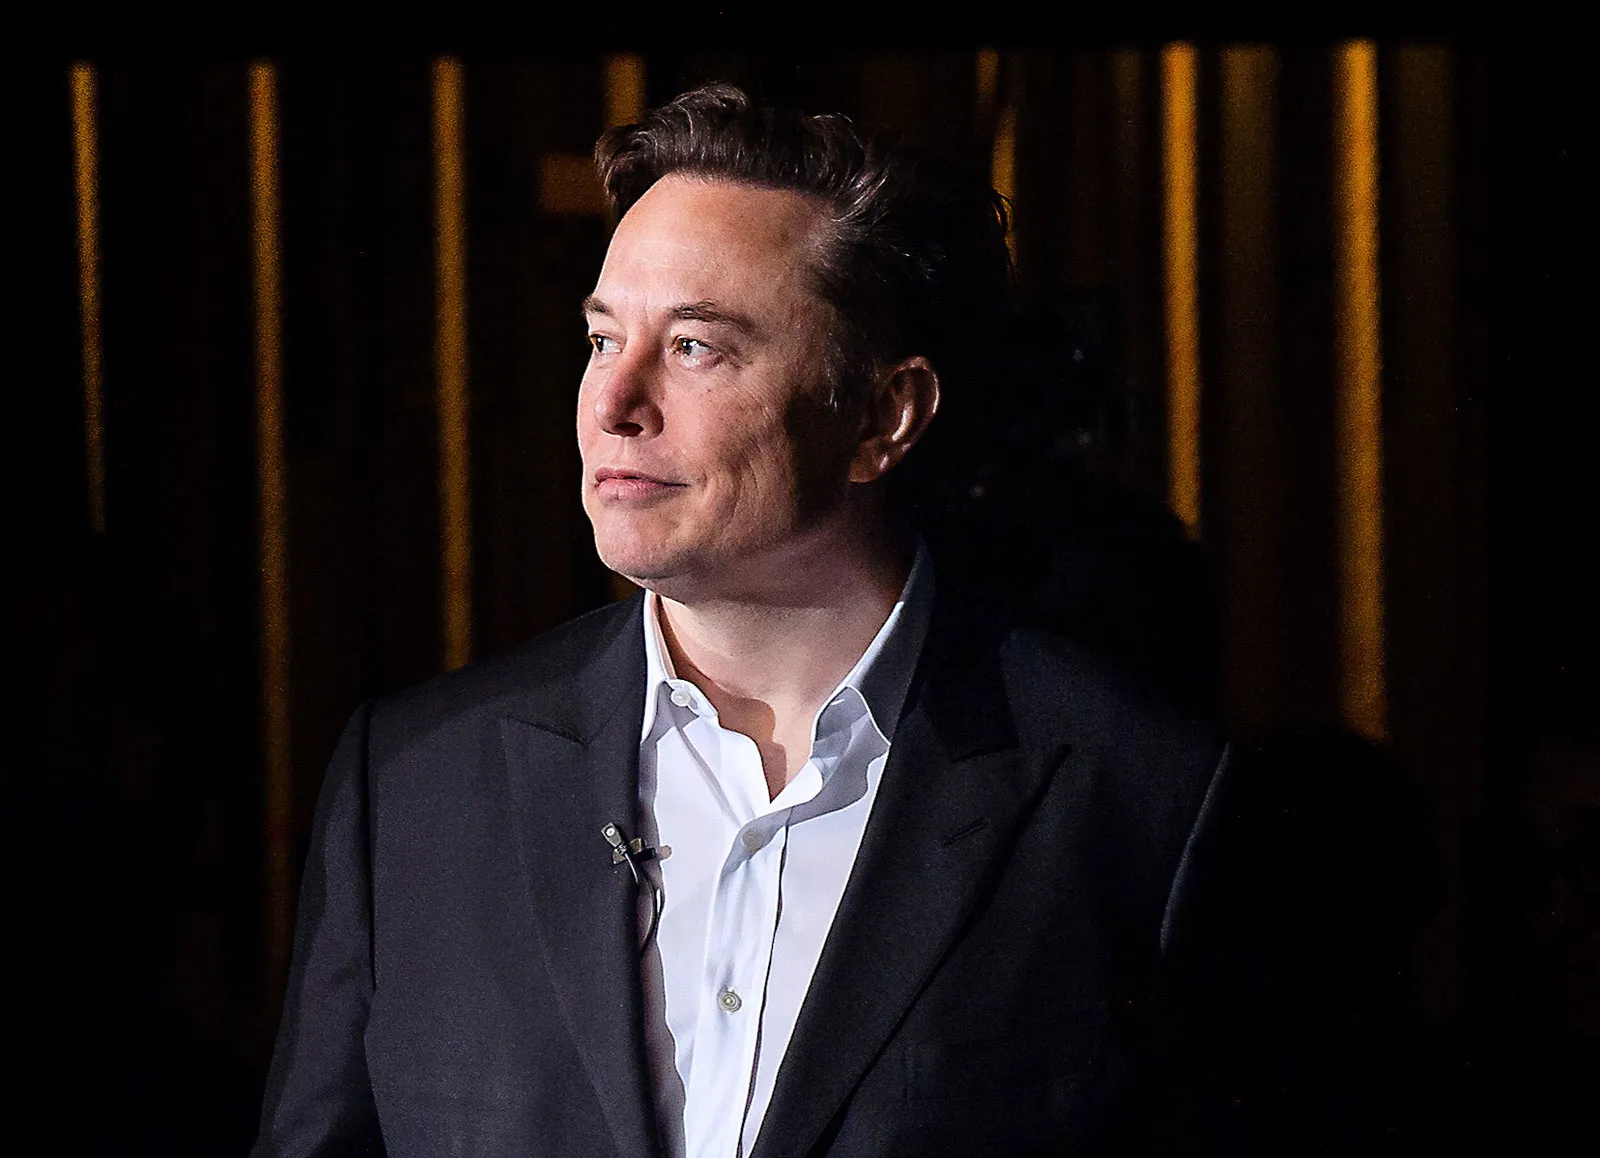 Imagem de Elon Musk de perfil, usando um terno preto com blusa social branca